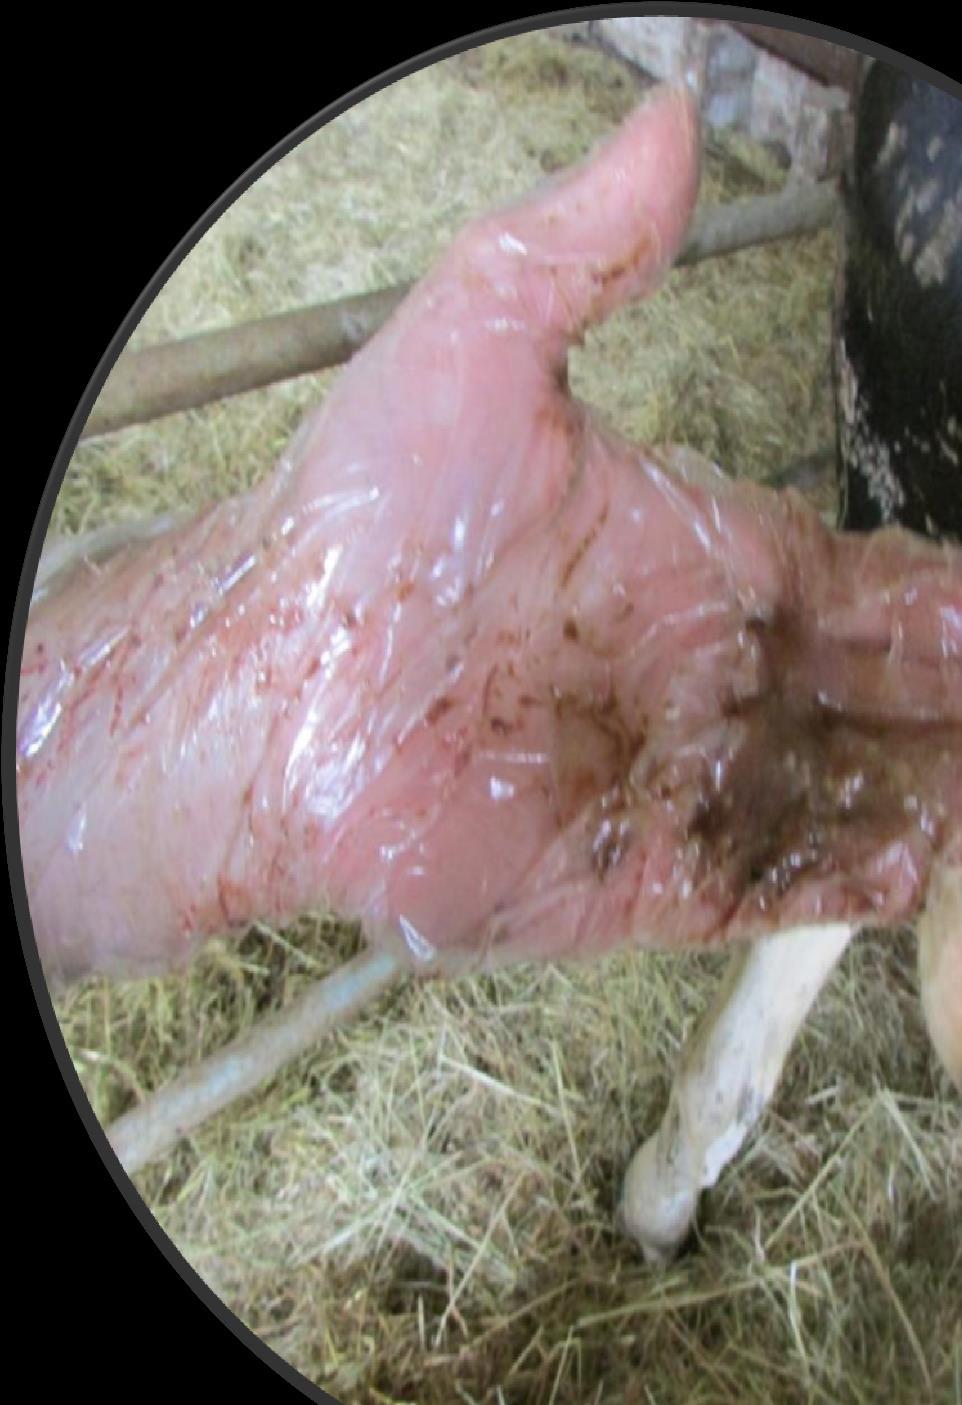 Relato de caso: Deslocamento de abomaso: Omentopexia DAE vacas multíparas, de alta produção e estavam confinadas.